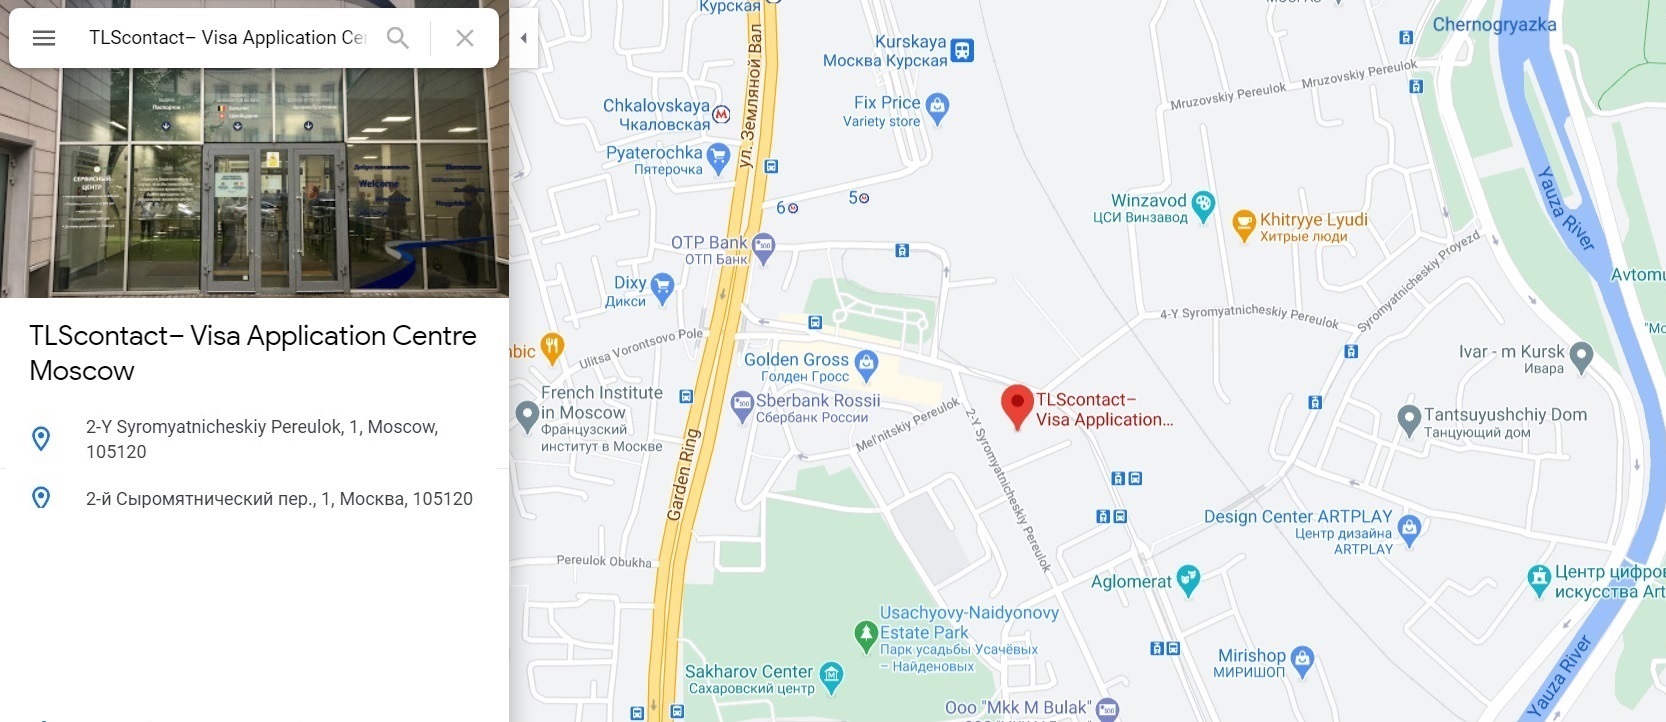 Визовый центр Великобритании в Москве на карте